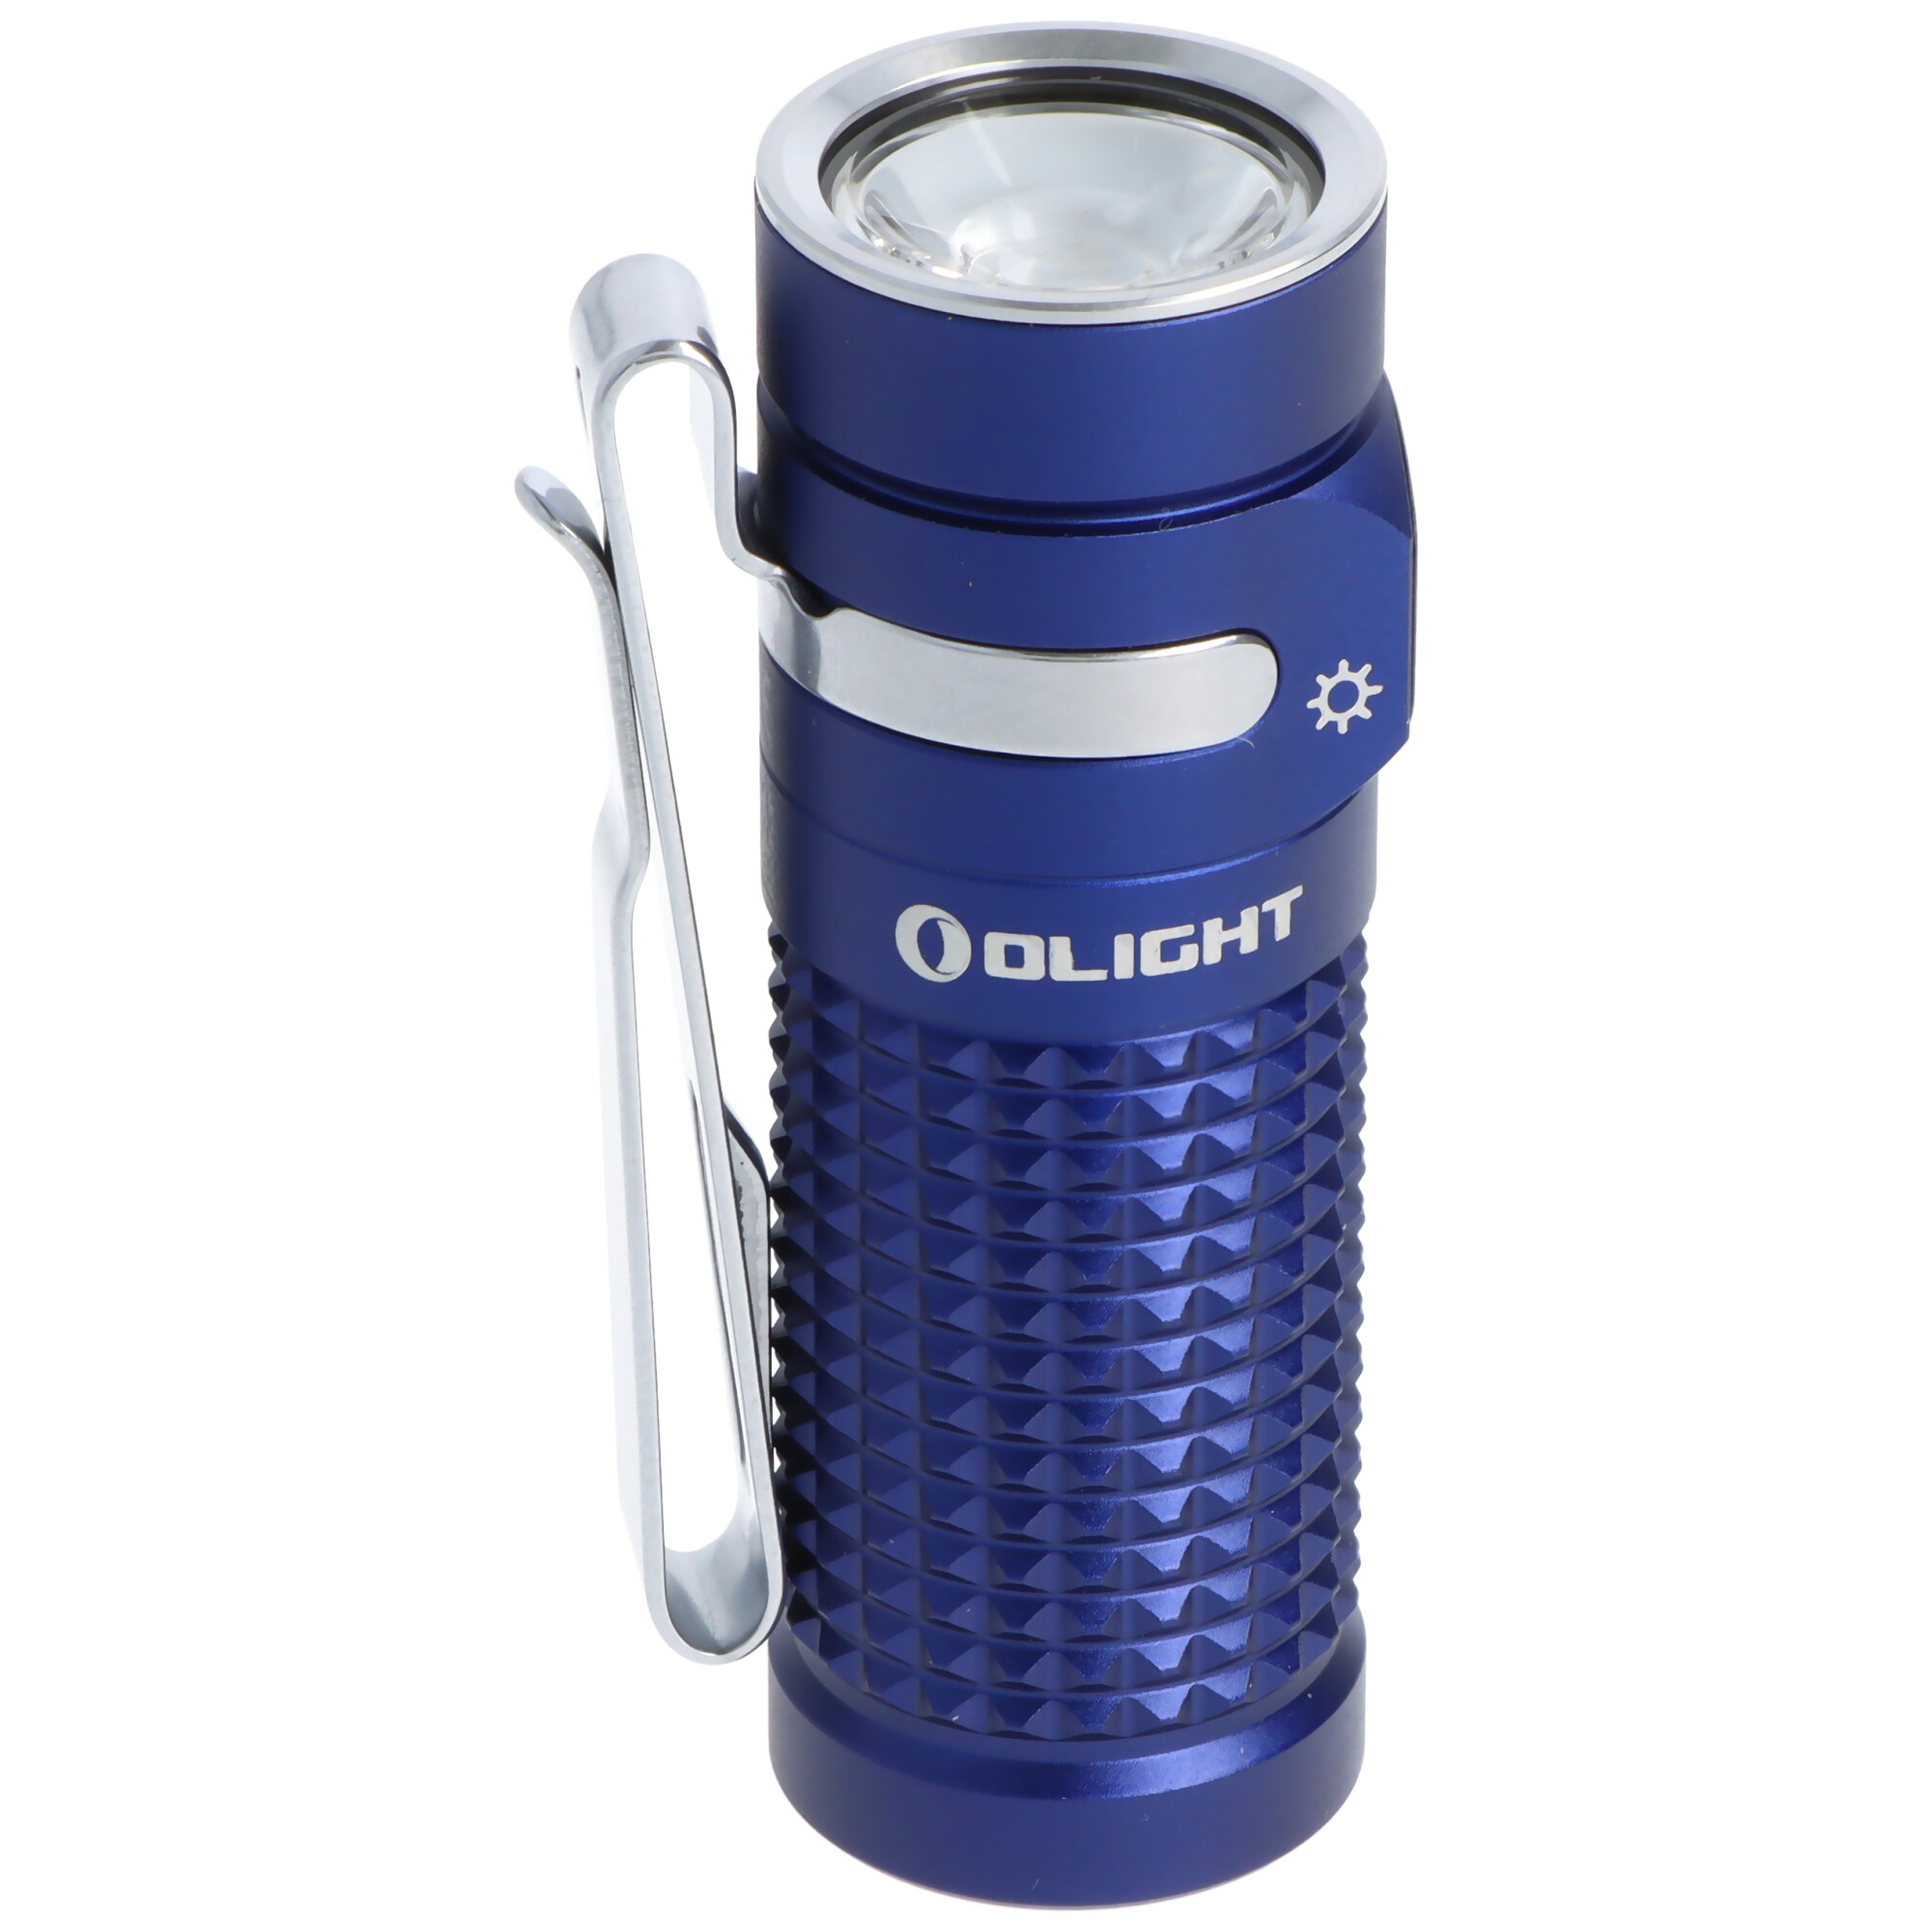 Olight Baton 4 Premium Edition königsblau, LED-Taschenlampe mit Ladecase, ultra-kompakt und leistungsstark, 1300 Lumen